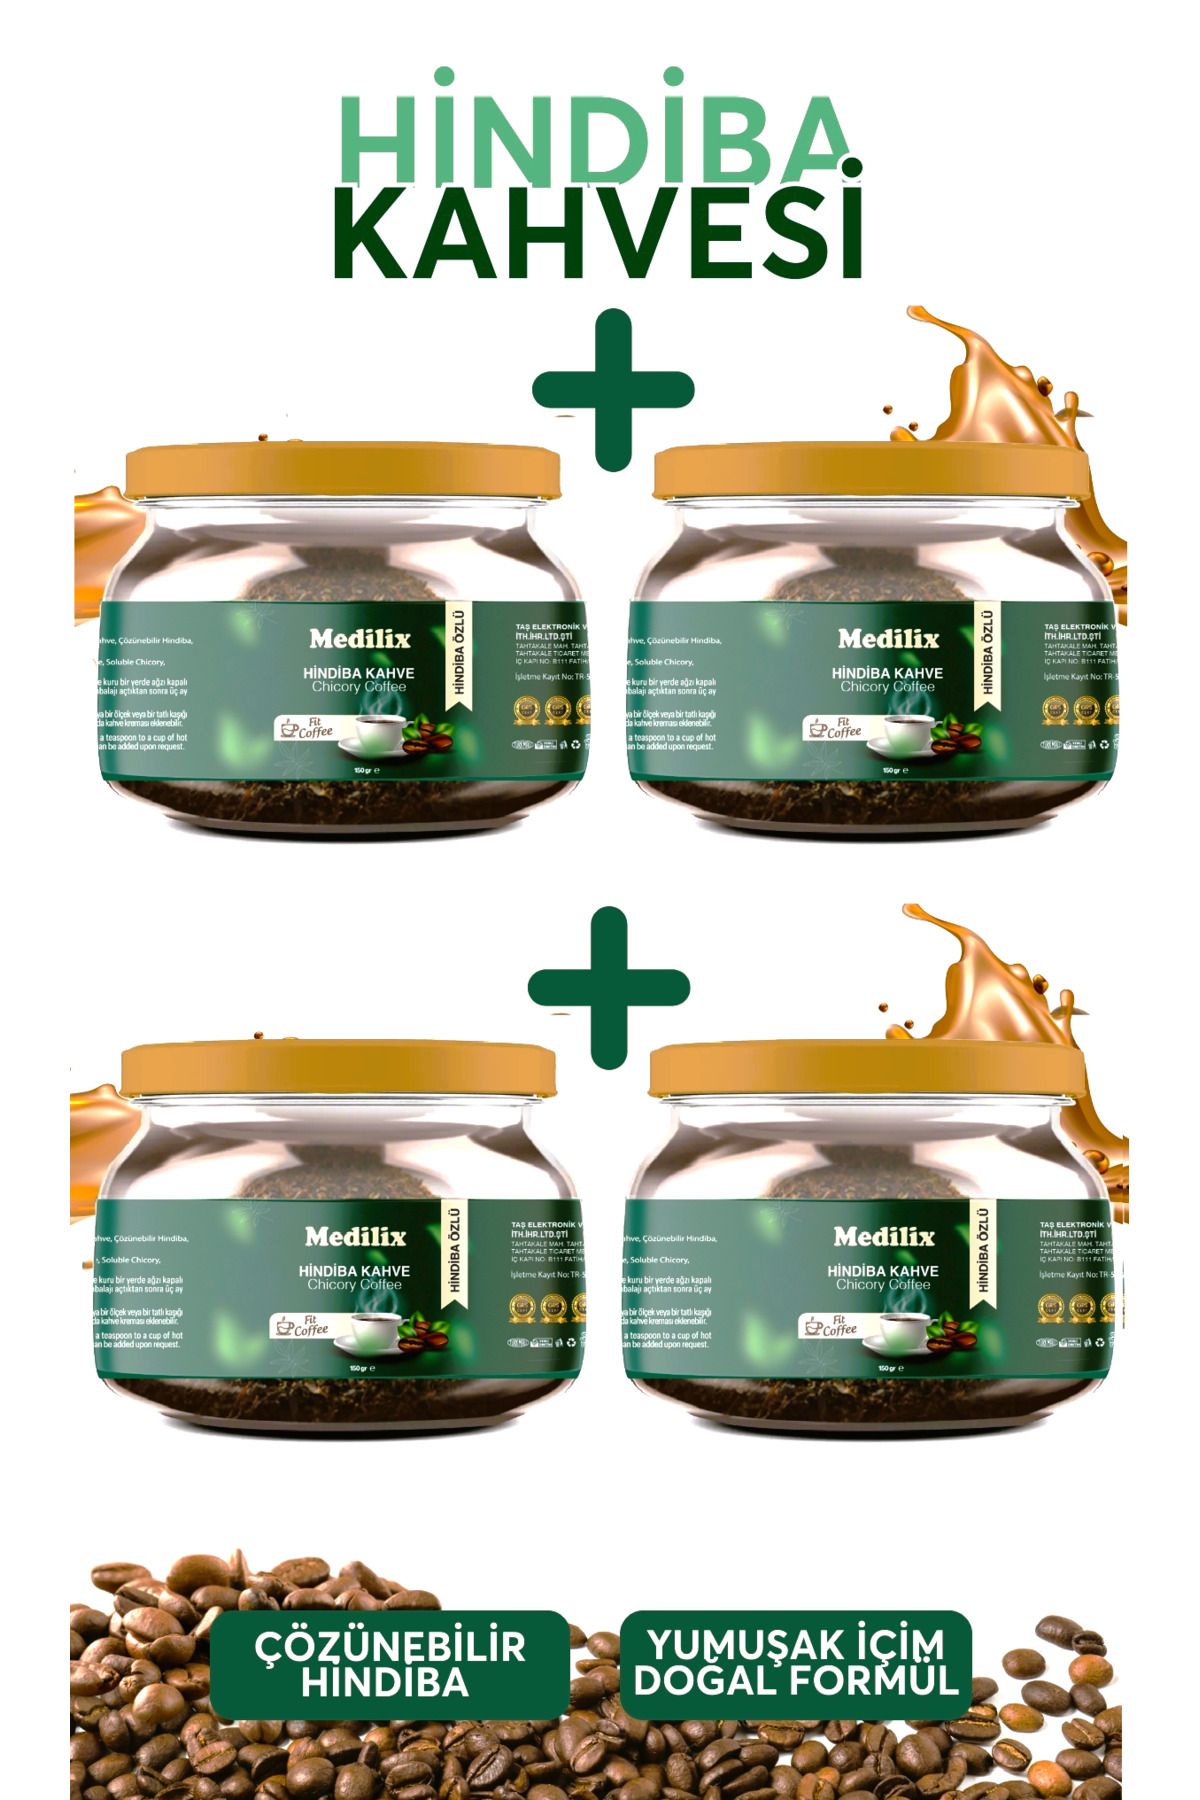 Medilix hindiba kahvesi detox kahvesi avantajlı paket 4 lü paket